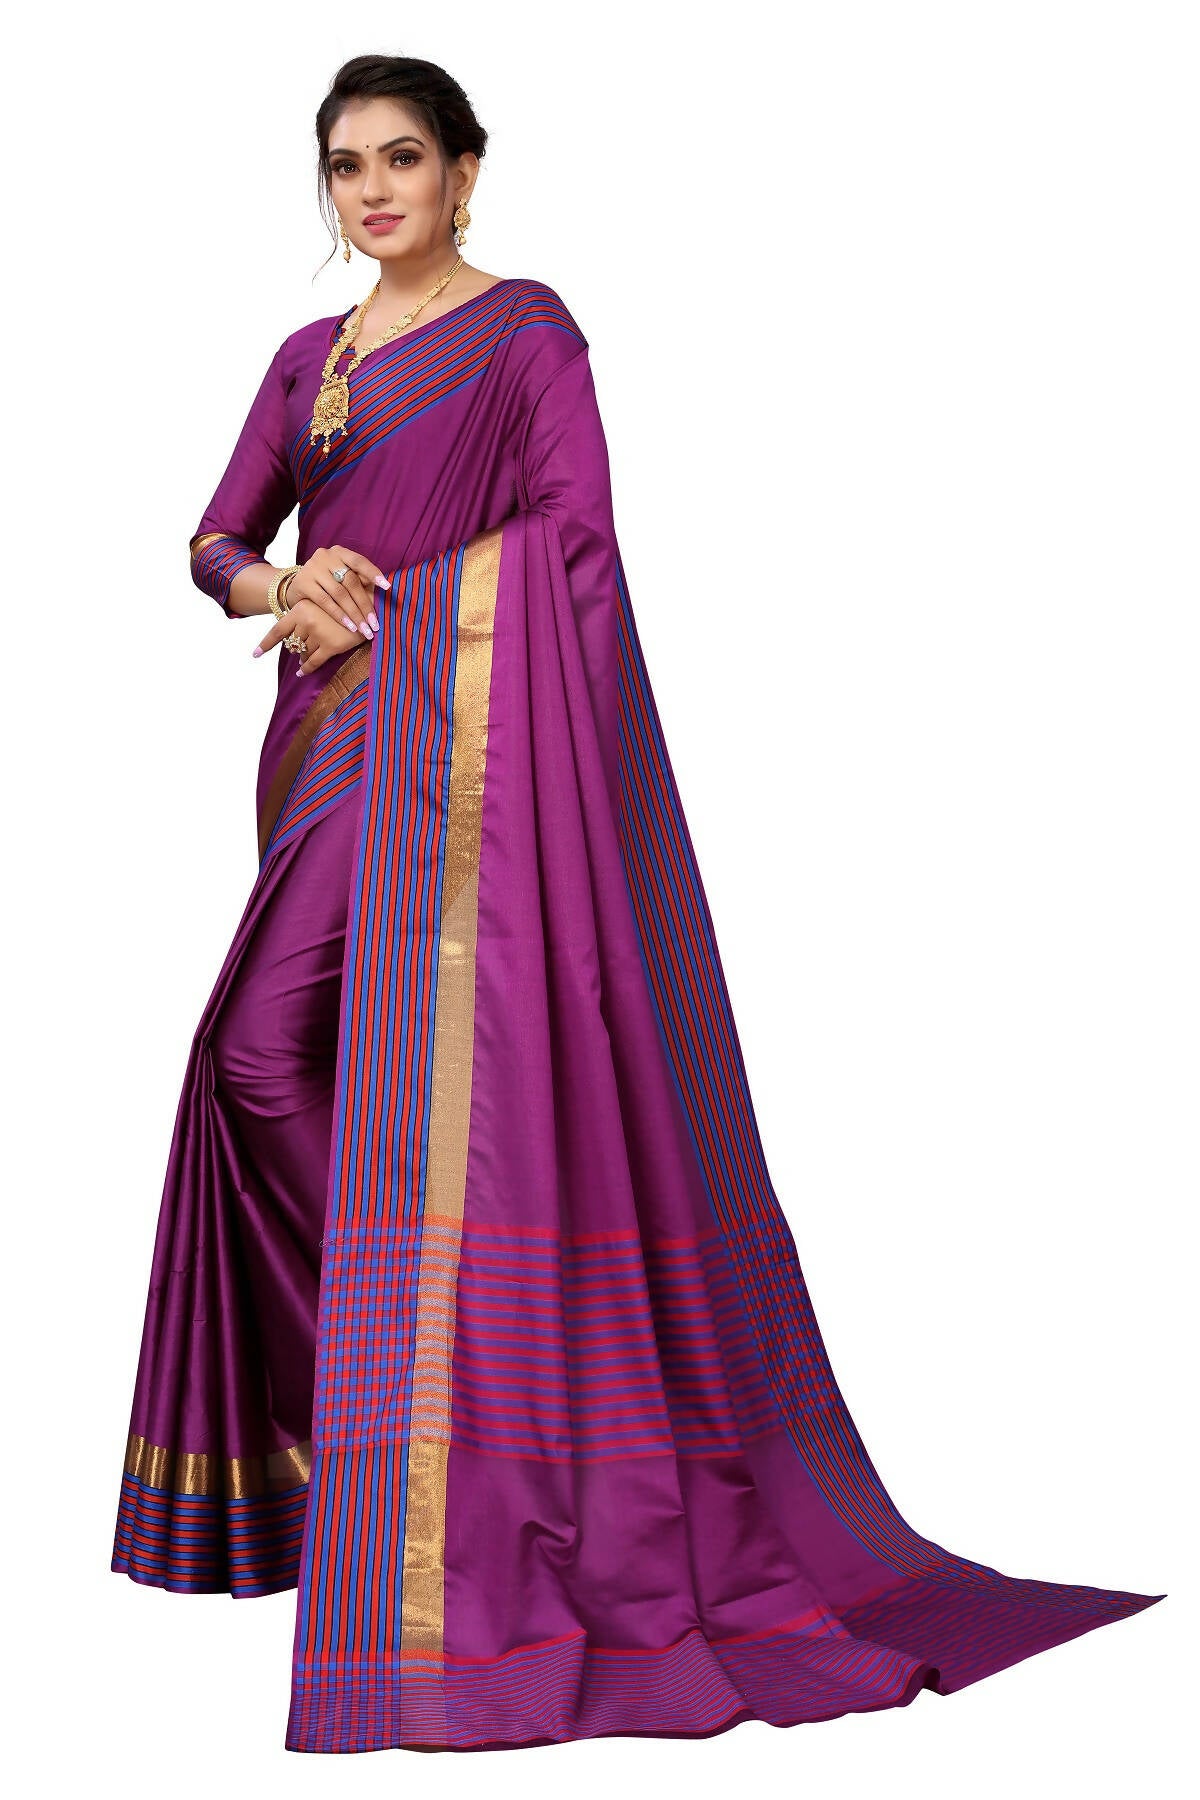 Vamika Ethnic Fire Purple Cotton Silk Saree - Distacart